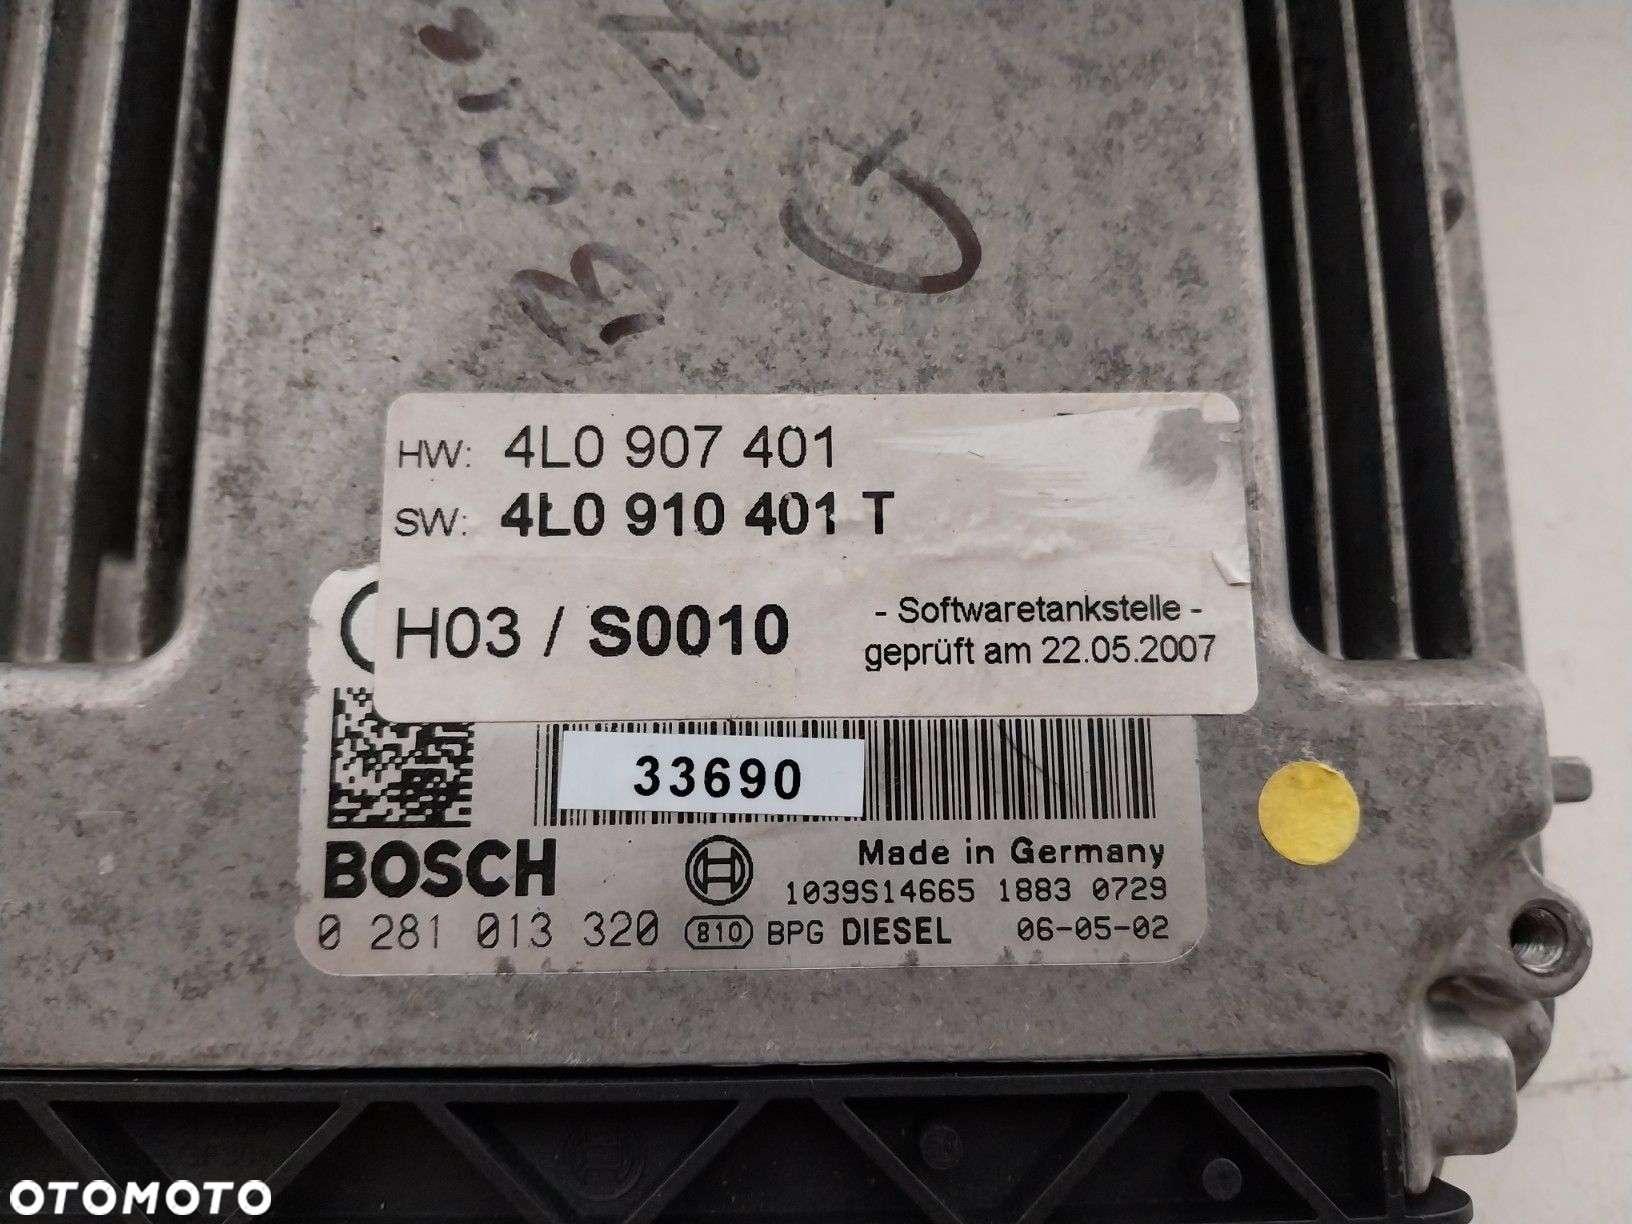 Sterownik silnika Bosch Audi Q7 3.0 TDI 0281013320 4L0907401 - 4